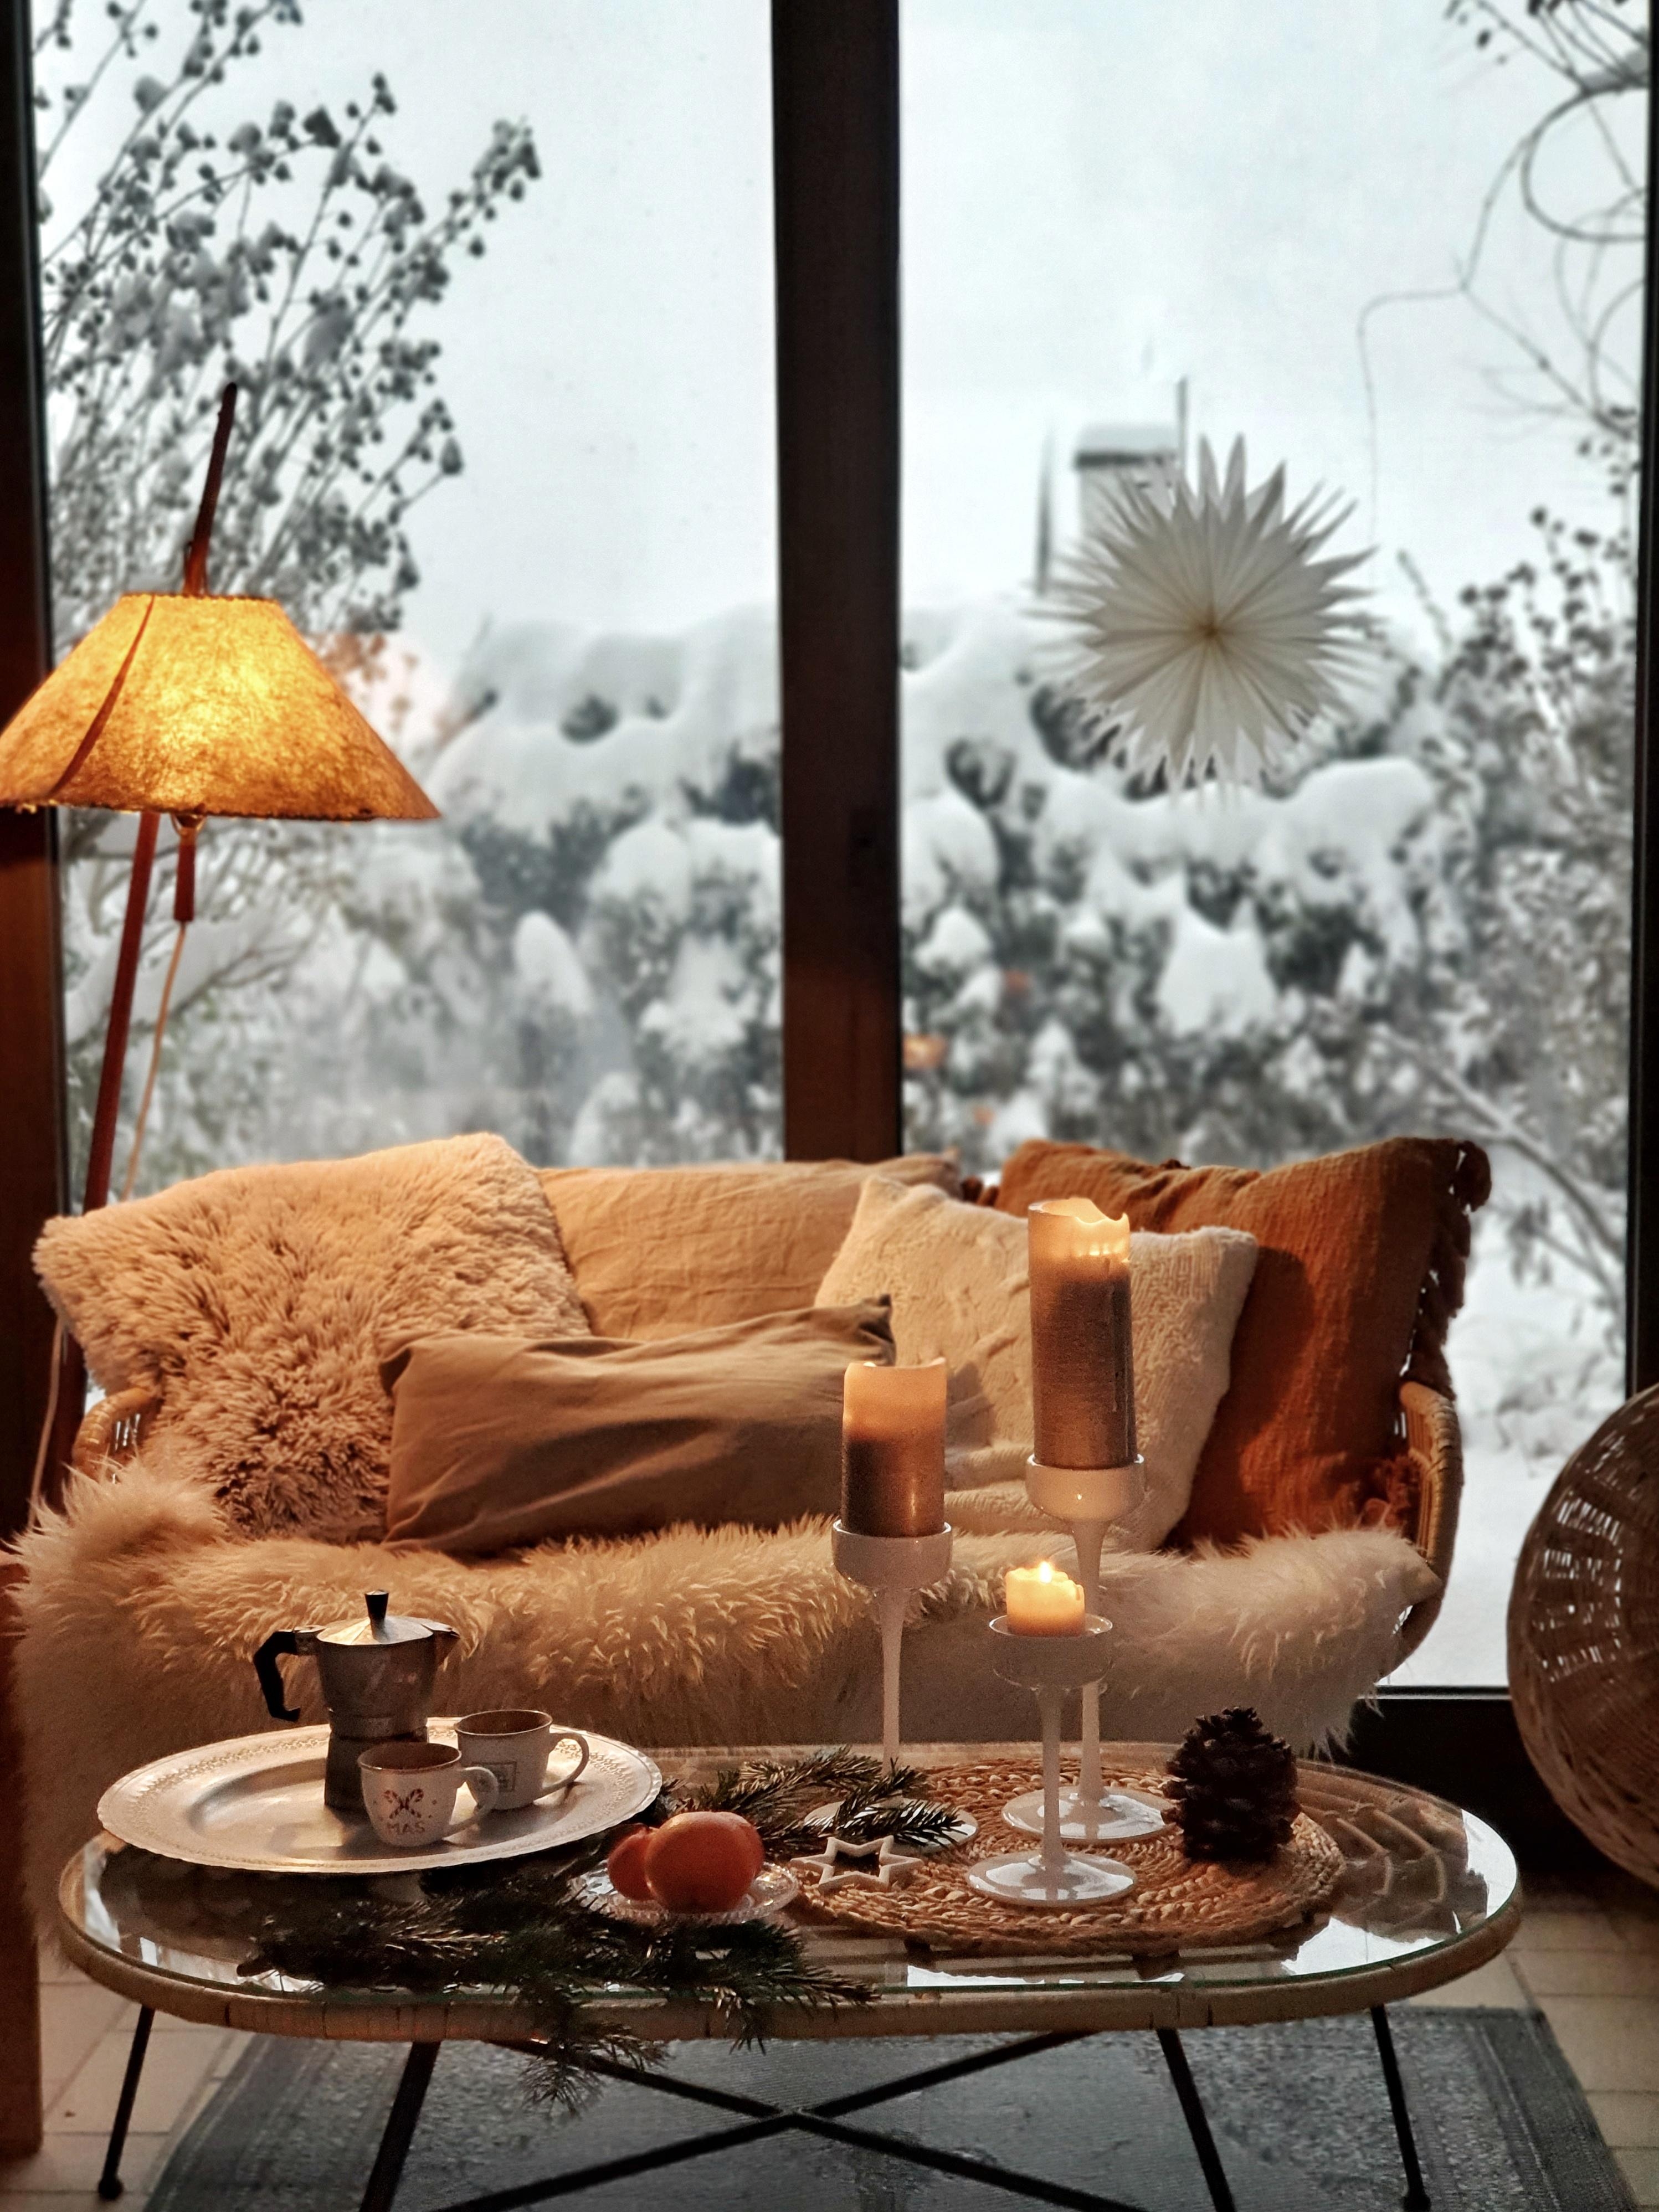 #skandistyle #interior #papierstern #winter #schnee #wohnzimmer